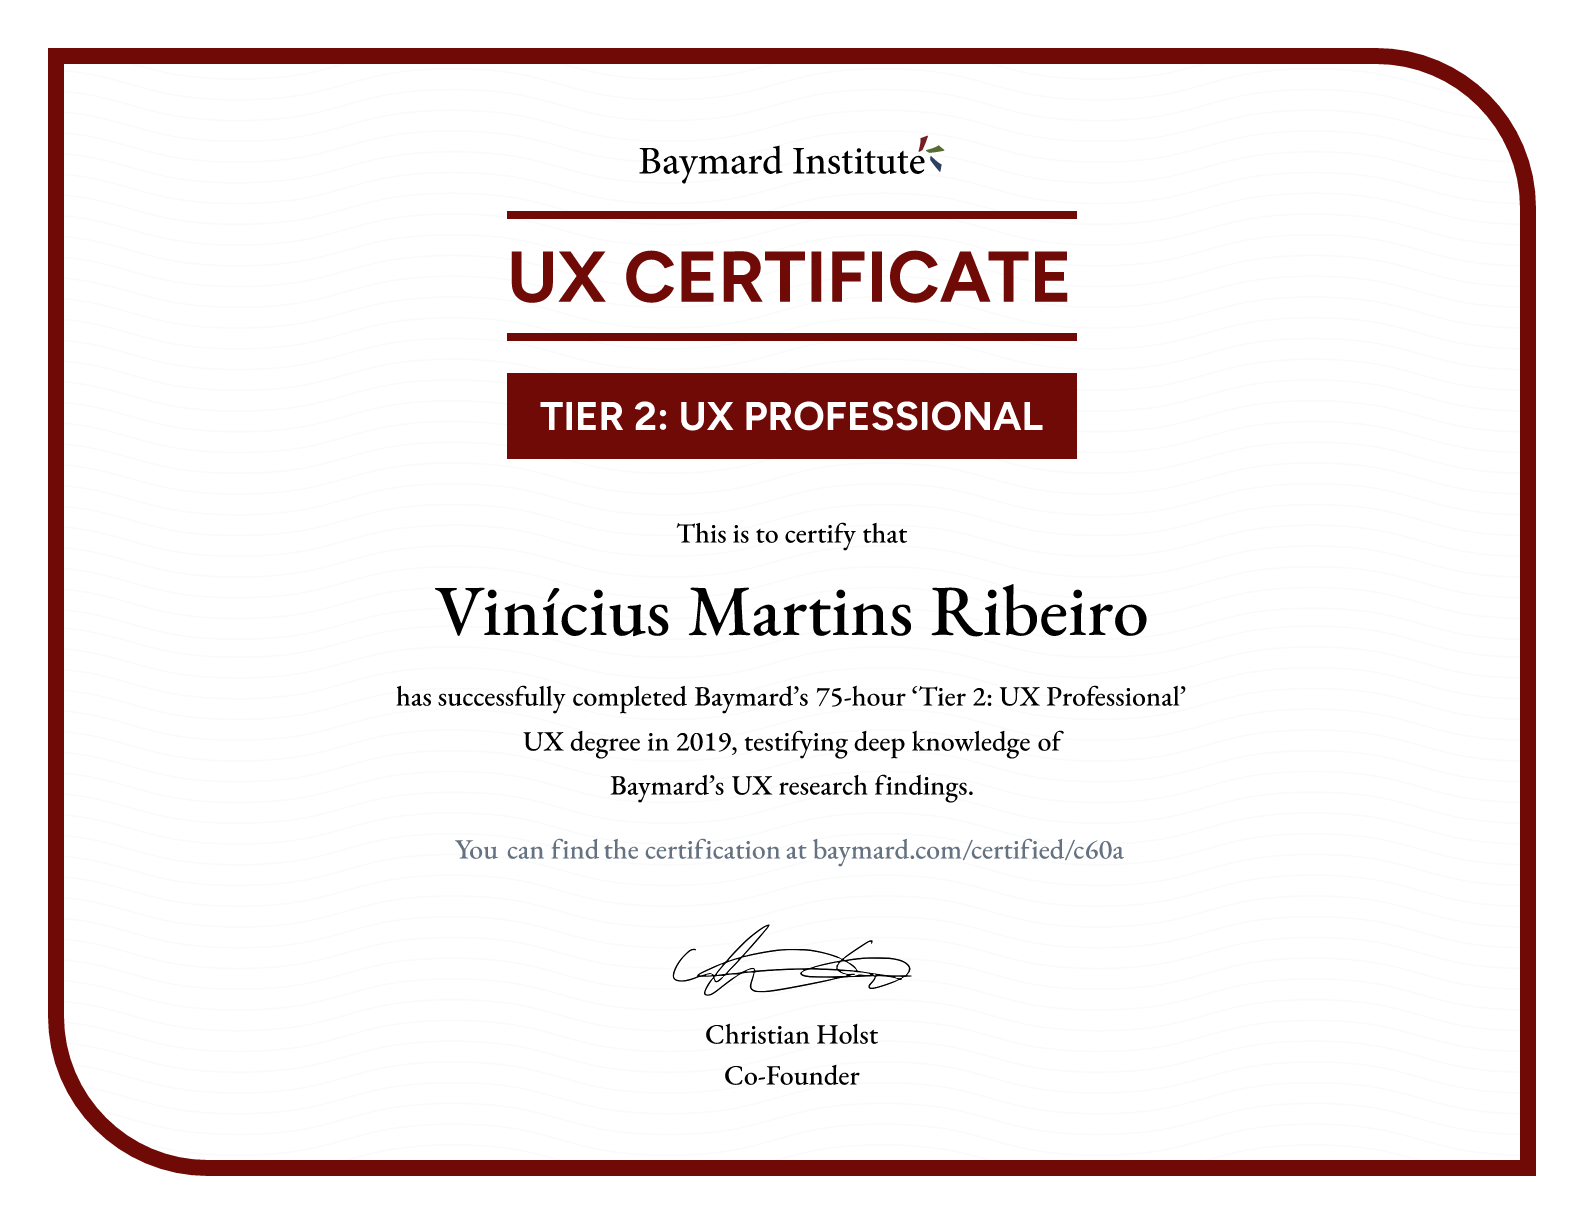 Vinícius Martins Ribeiro’s certificate